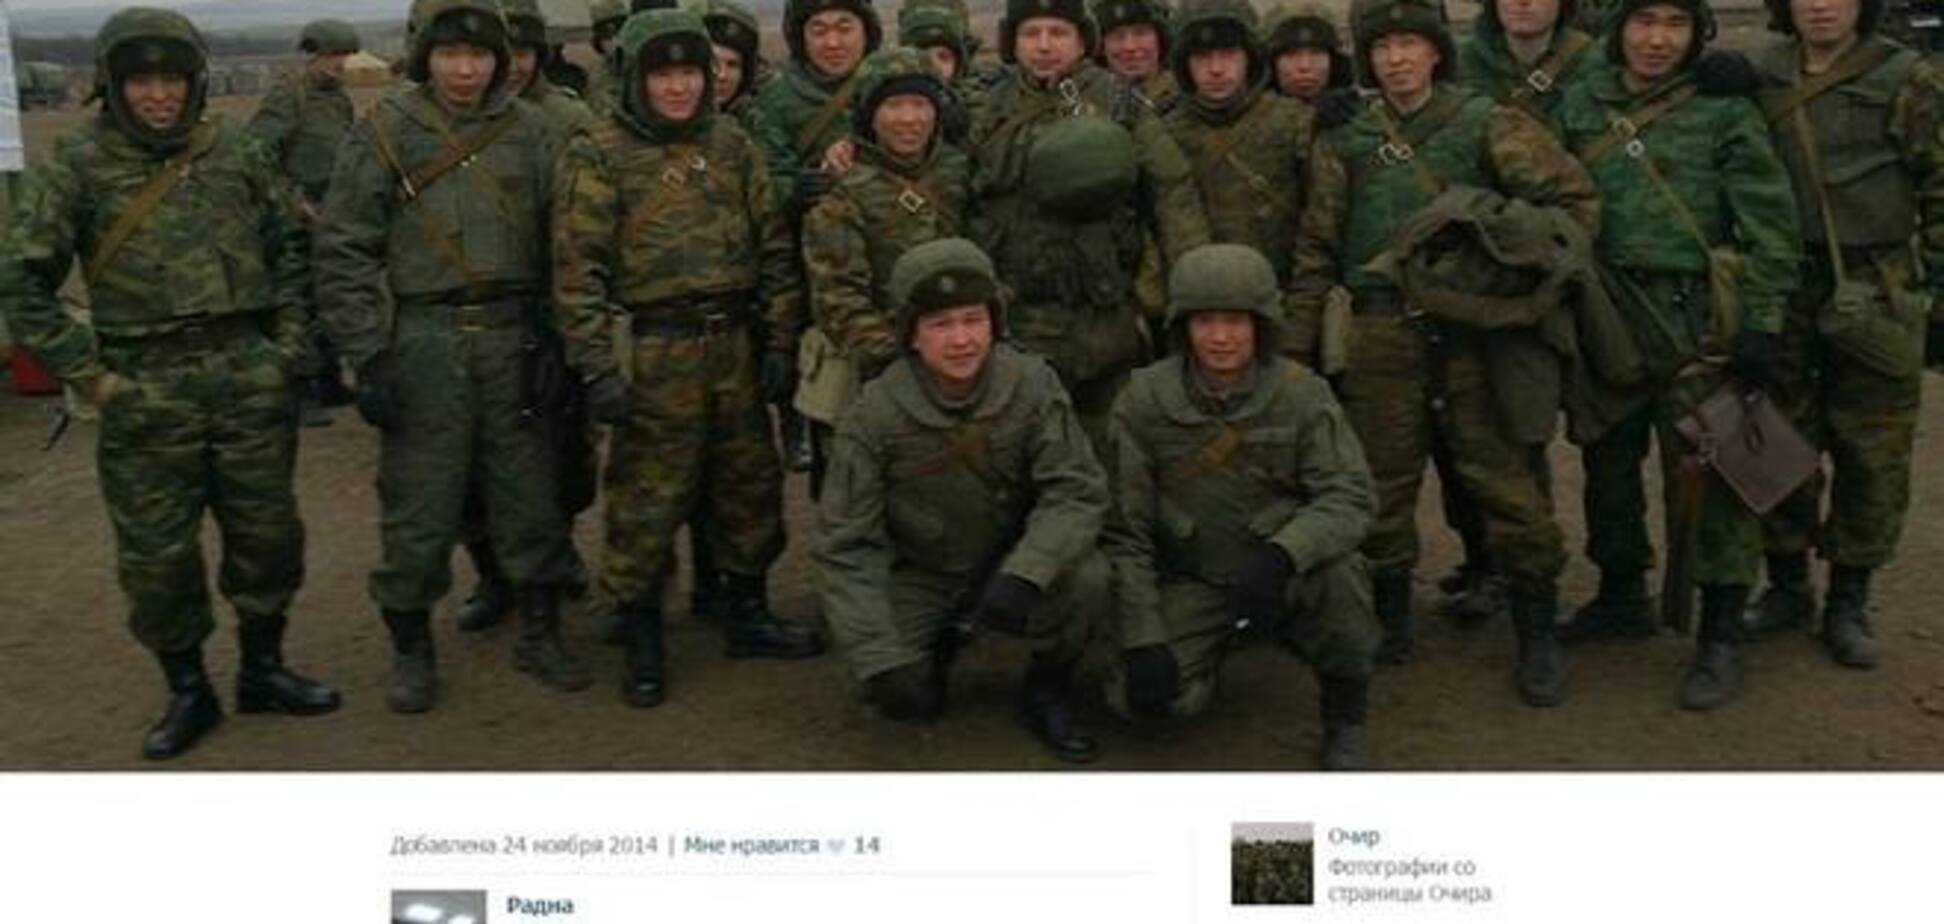 Опубликованы новые фотодоказательства отправки Россией представителей нацменьшинств на Донбасс